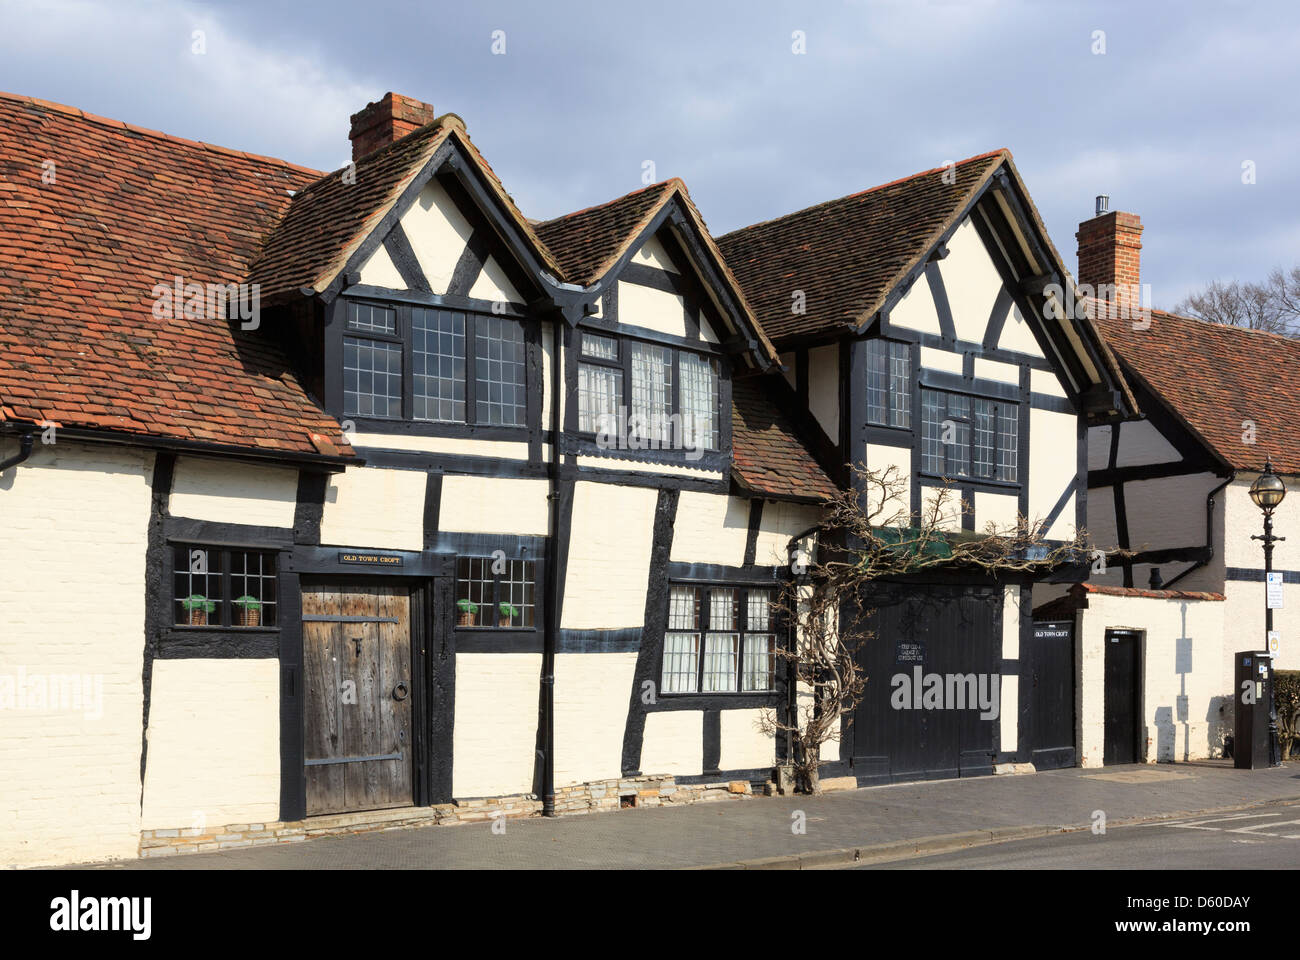 16e siècle Vieille Ville Croft maison bois bâtiment classé grade II à Stratford-upon-Avon, Warwickshire, Angleterre, Royaume-Uni, Angleterre Banque D'Images